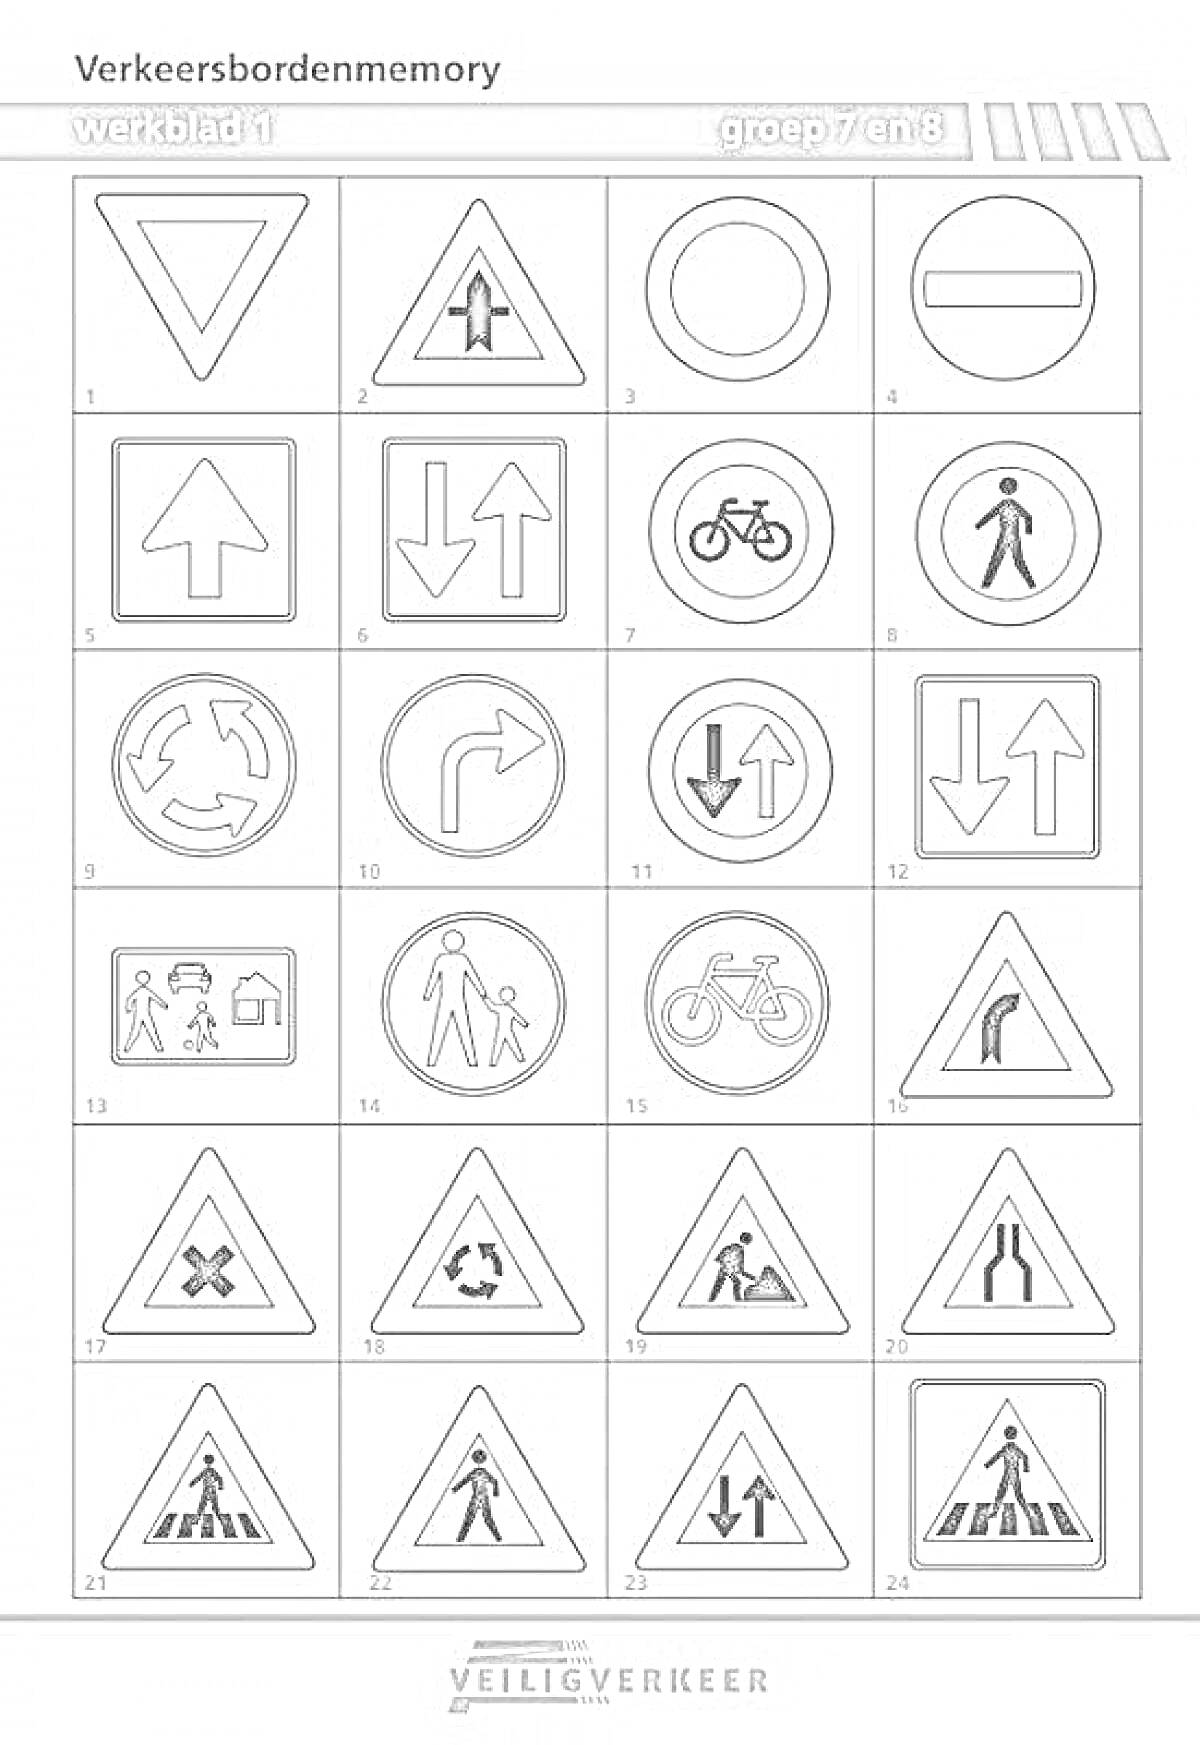 Раскраска Дорожные знаки различной тематики с элементами: велосипедистами, пешеходами, стрелками, кругами, треугольниками и прочими символами